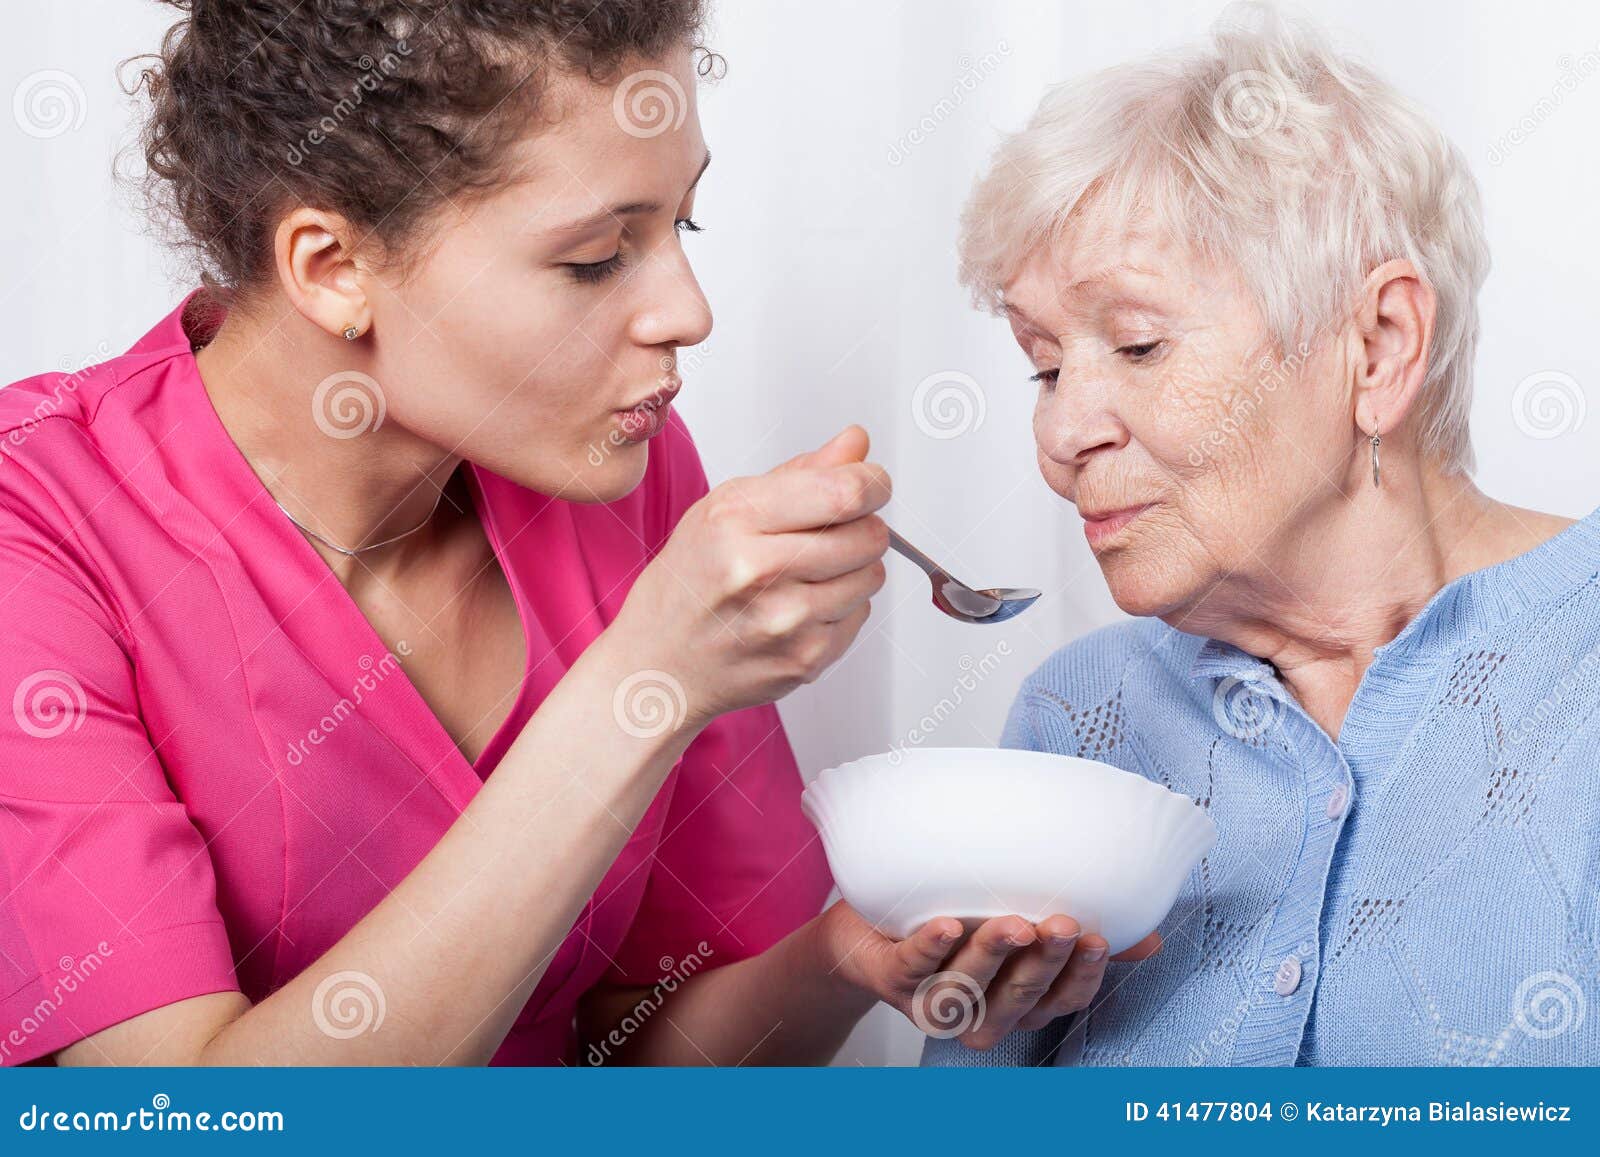 nurse feeding an older lady